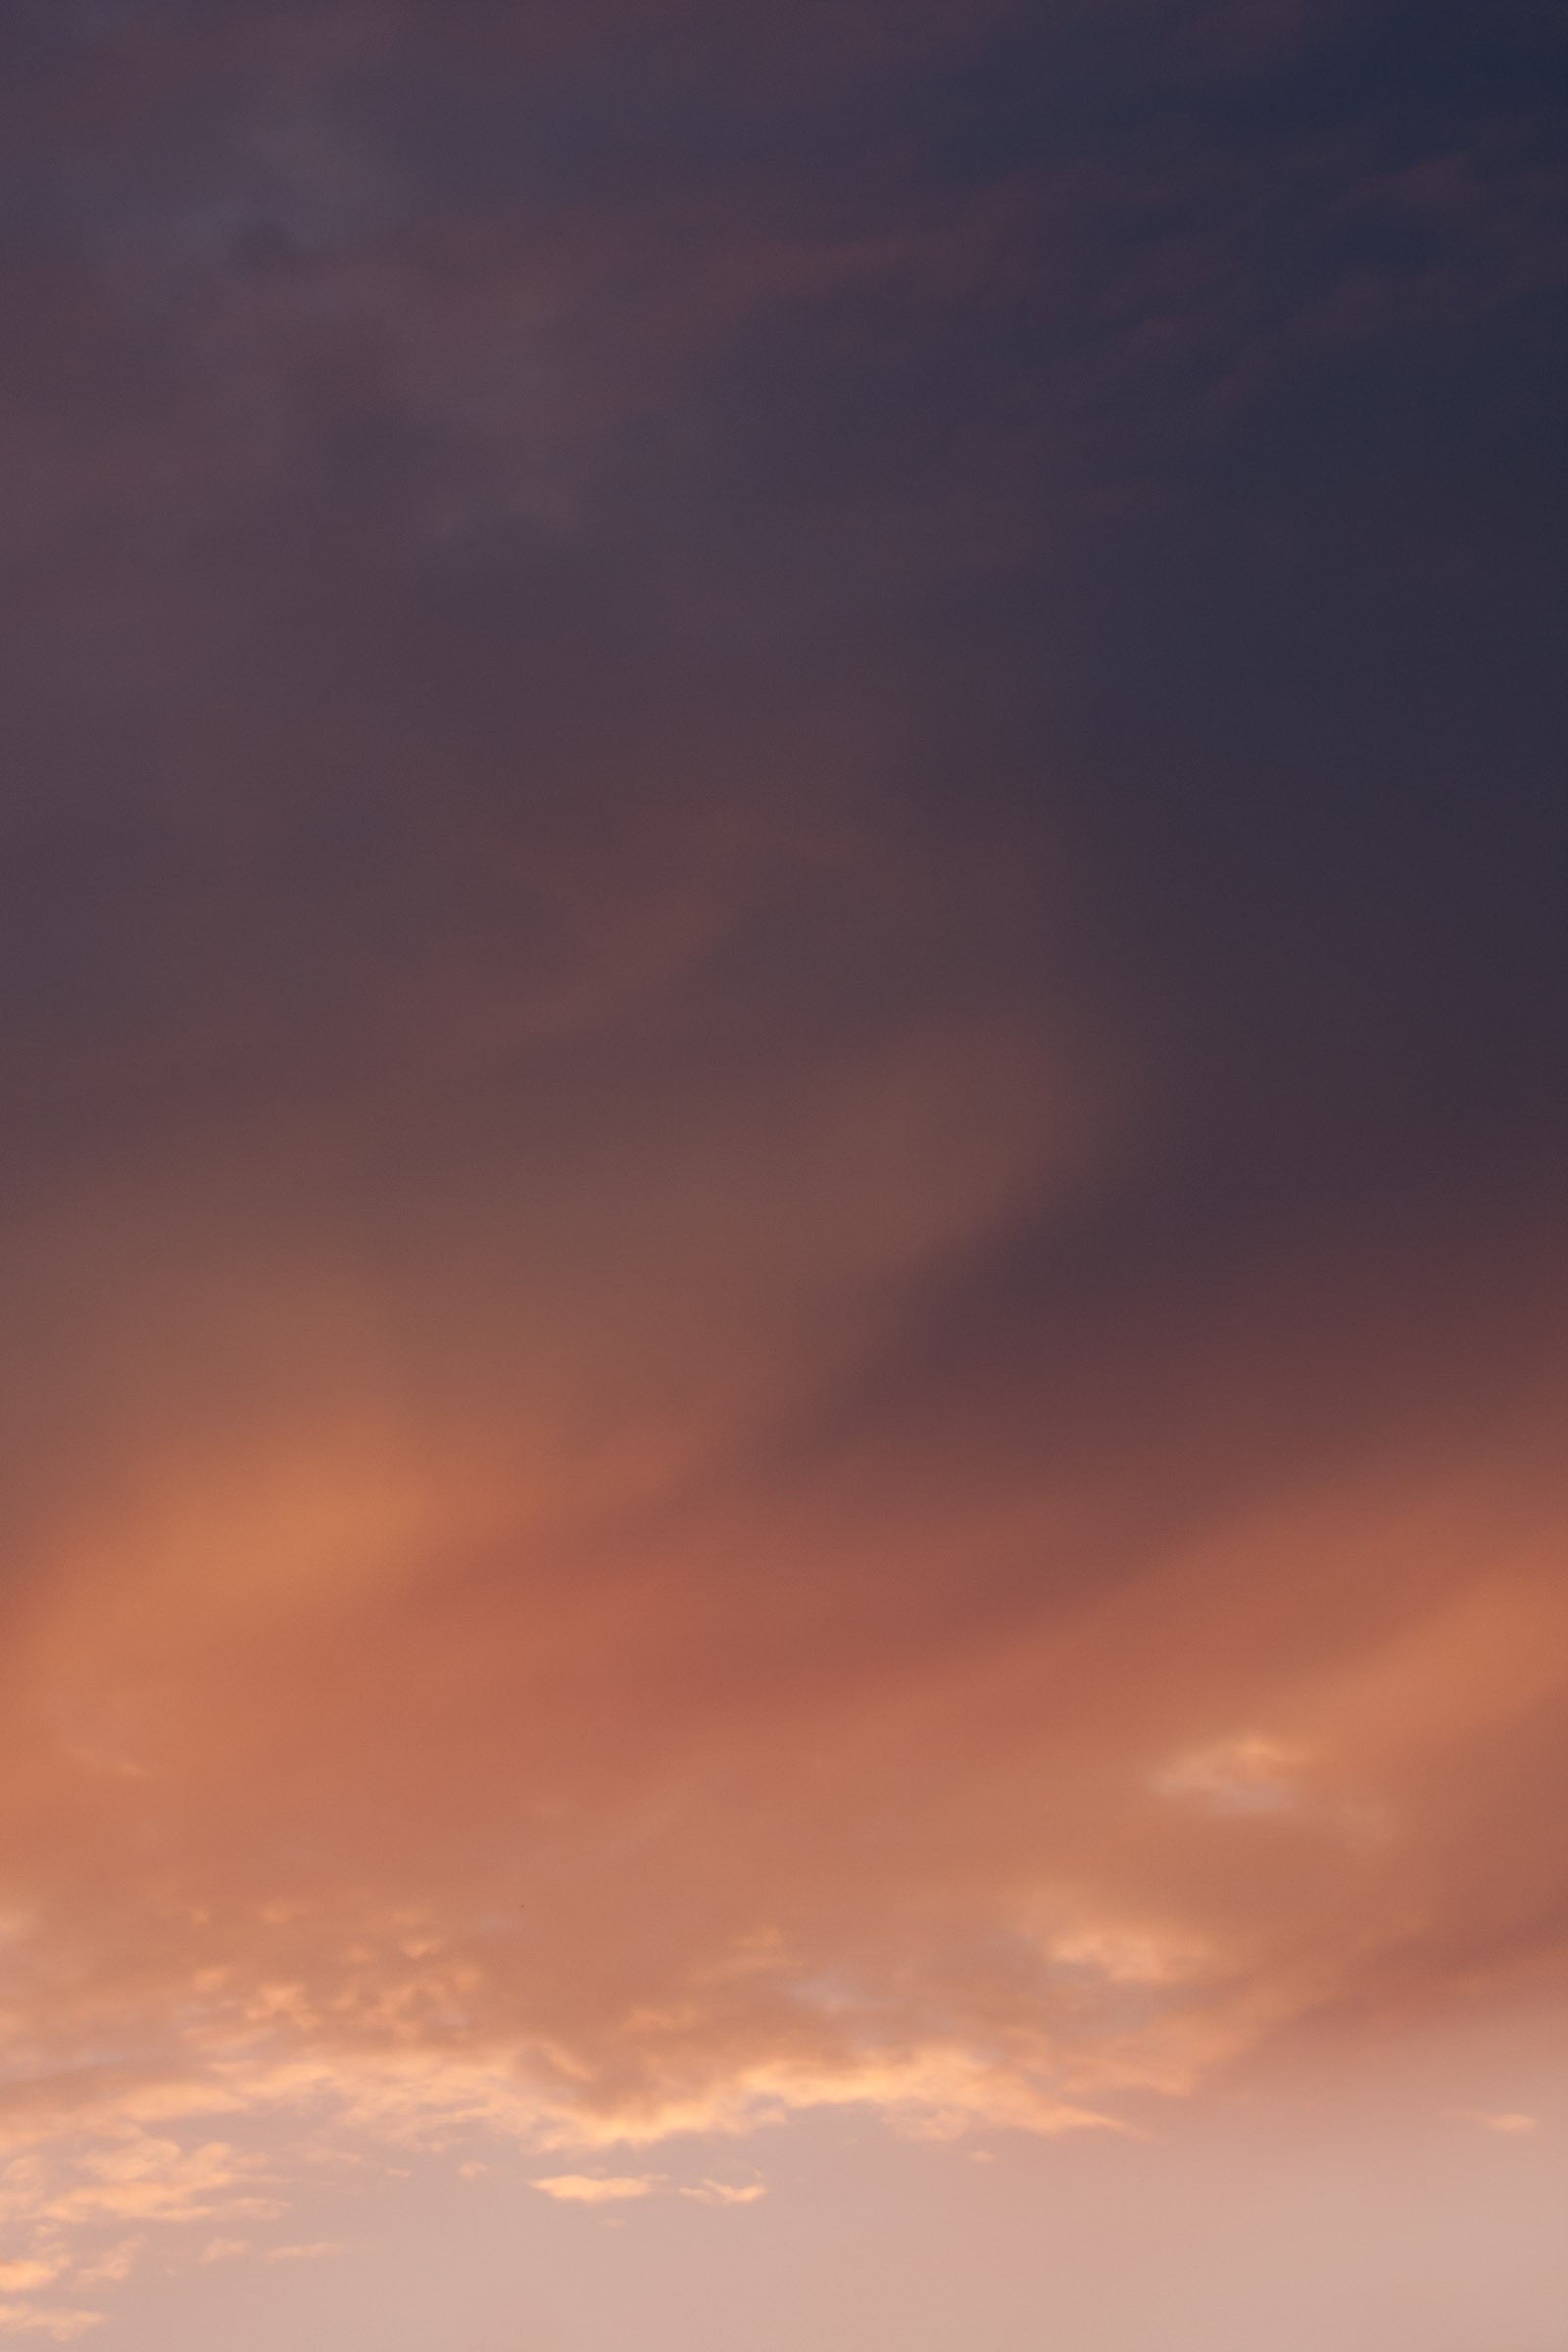 グラデーションが綺麗な夕焼け雲 フリー写真素材 イメージガレージ